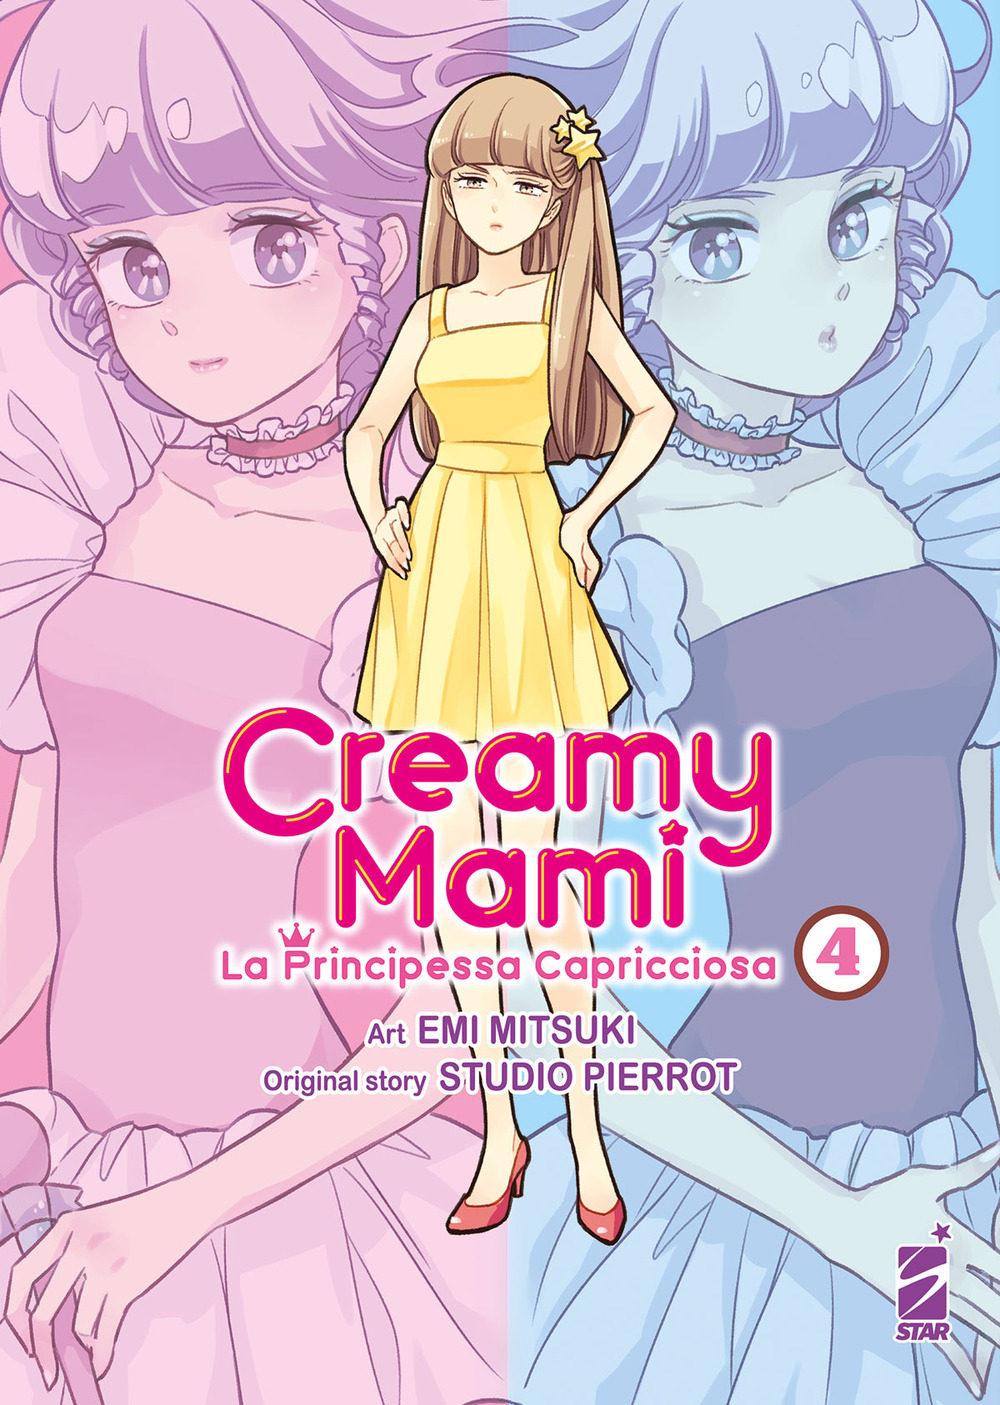 Creamy mami. La principessa capricciosa. Vol. 4